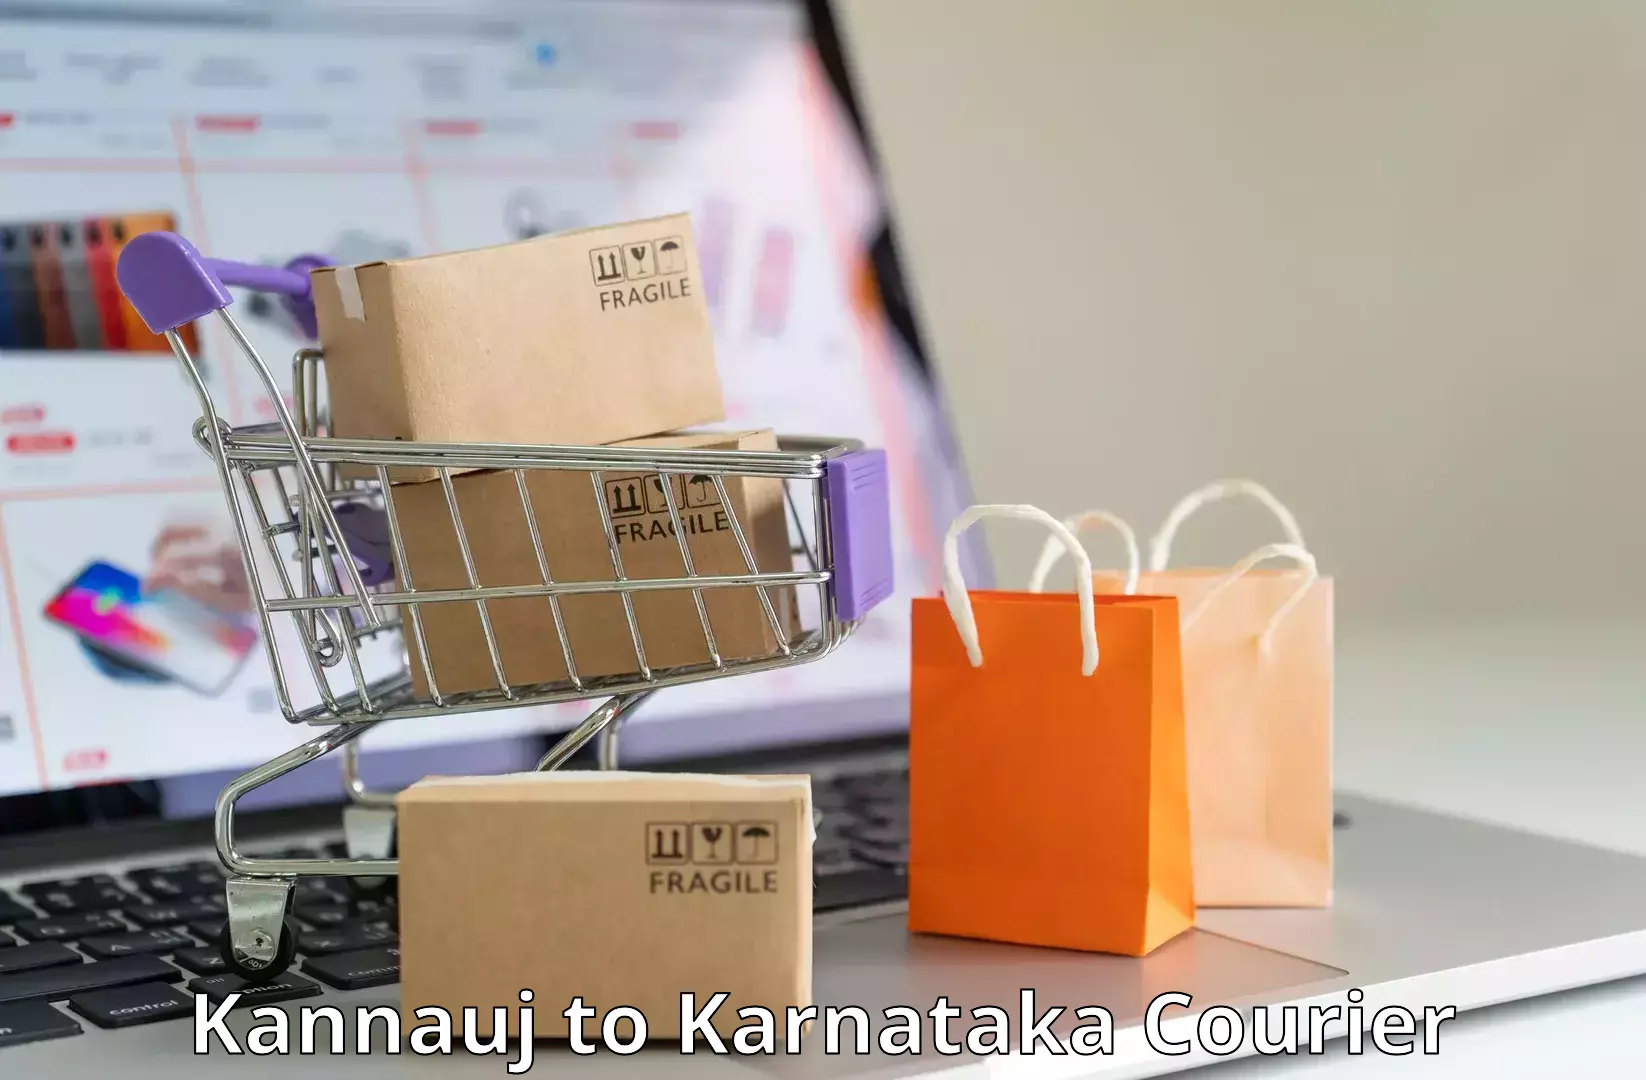 Specialized courier services Kannauj to Karnataka